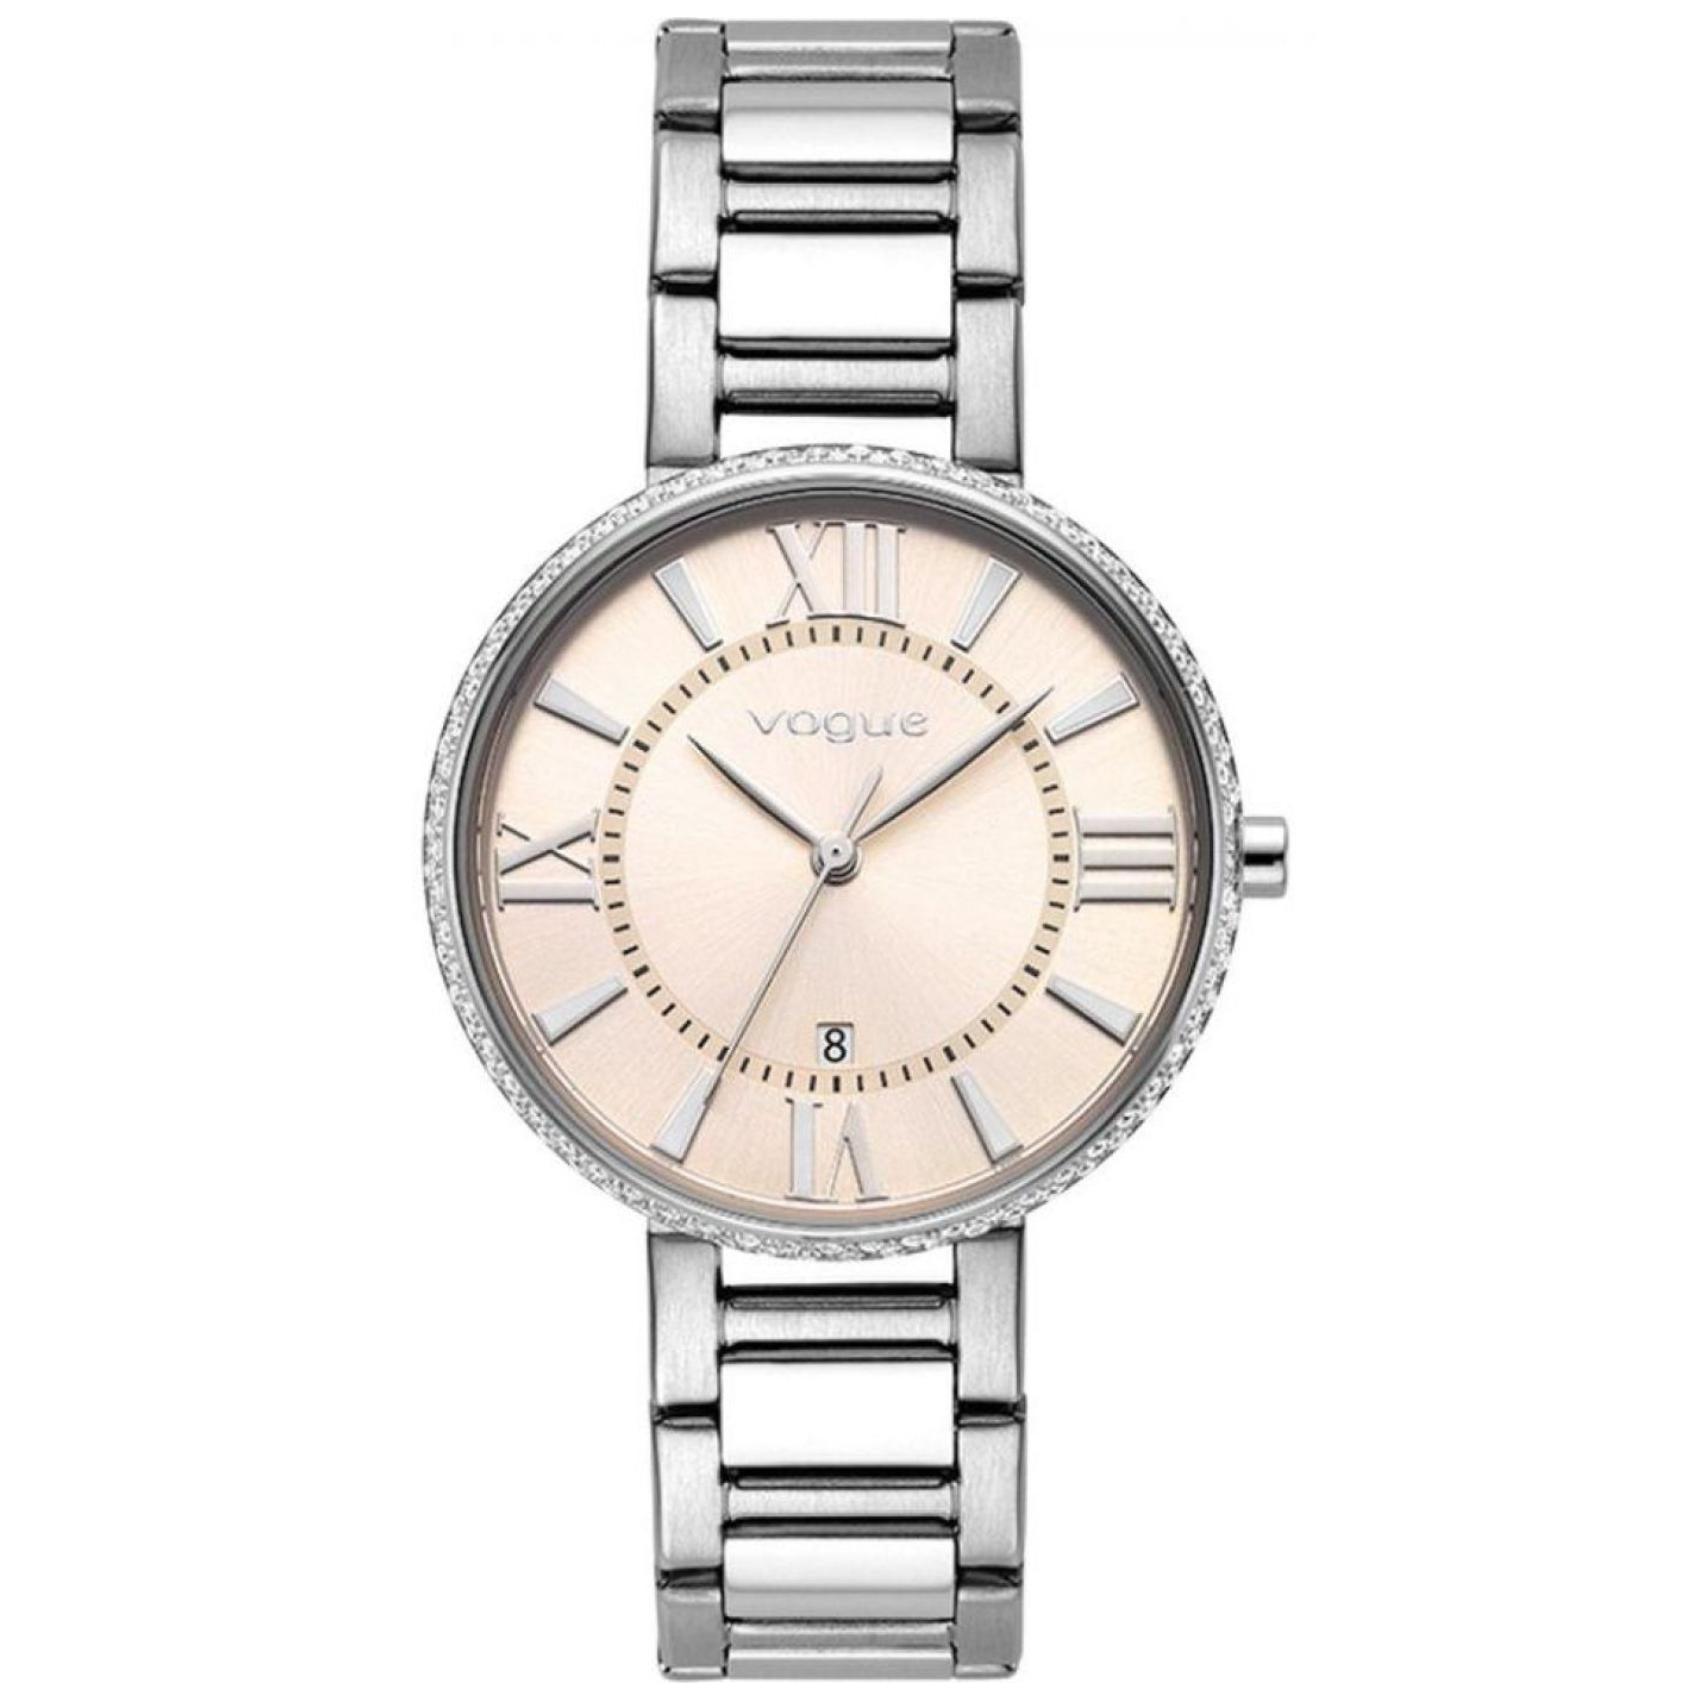 Γυναικείο ρολόι Vogue Jet Set 2020612282 με ασημί ατσάλινο μπρασελέ και μπεζ σαμπανιζέ καντράν διαμέτρου 34mm με ζιργκόν.